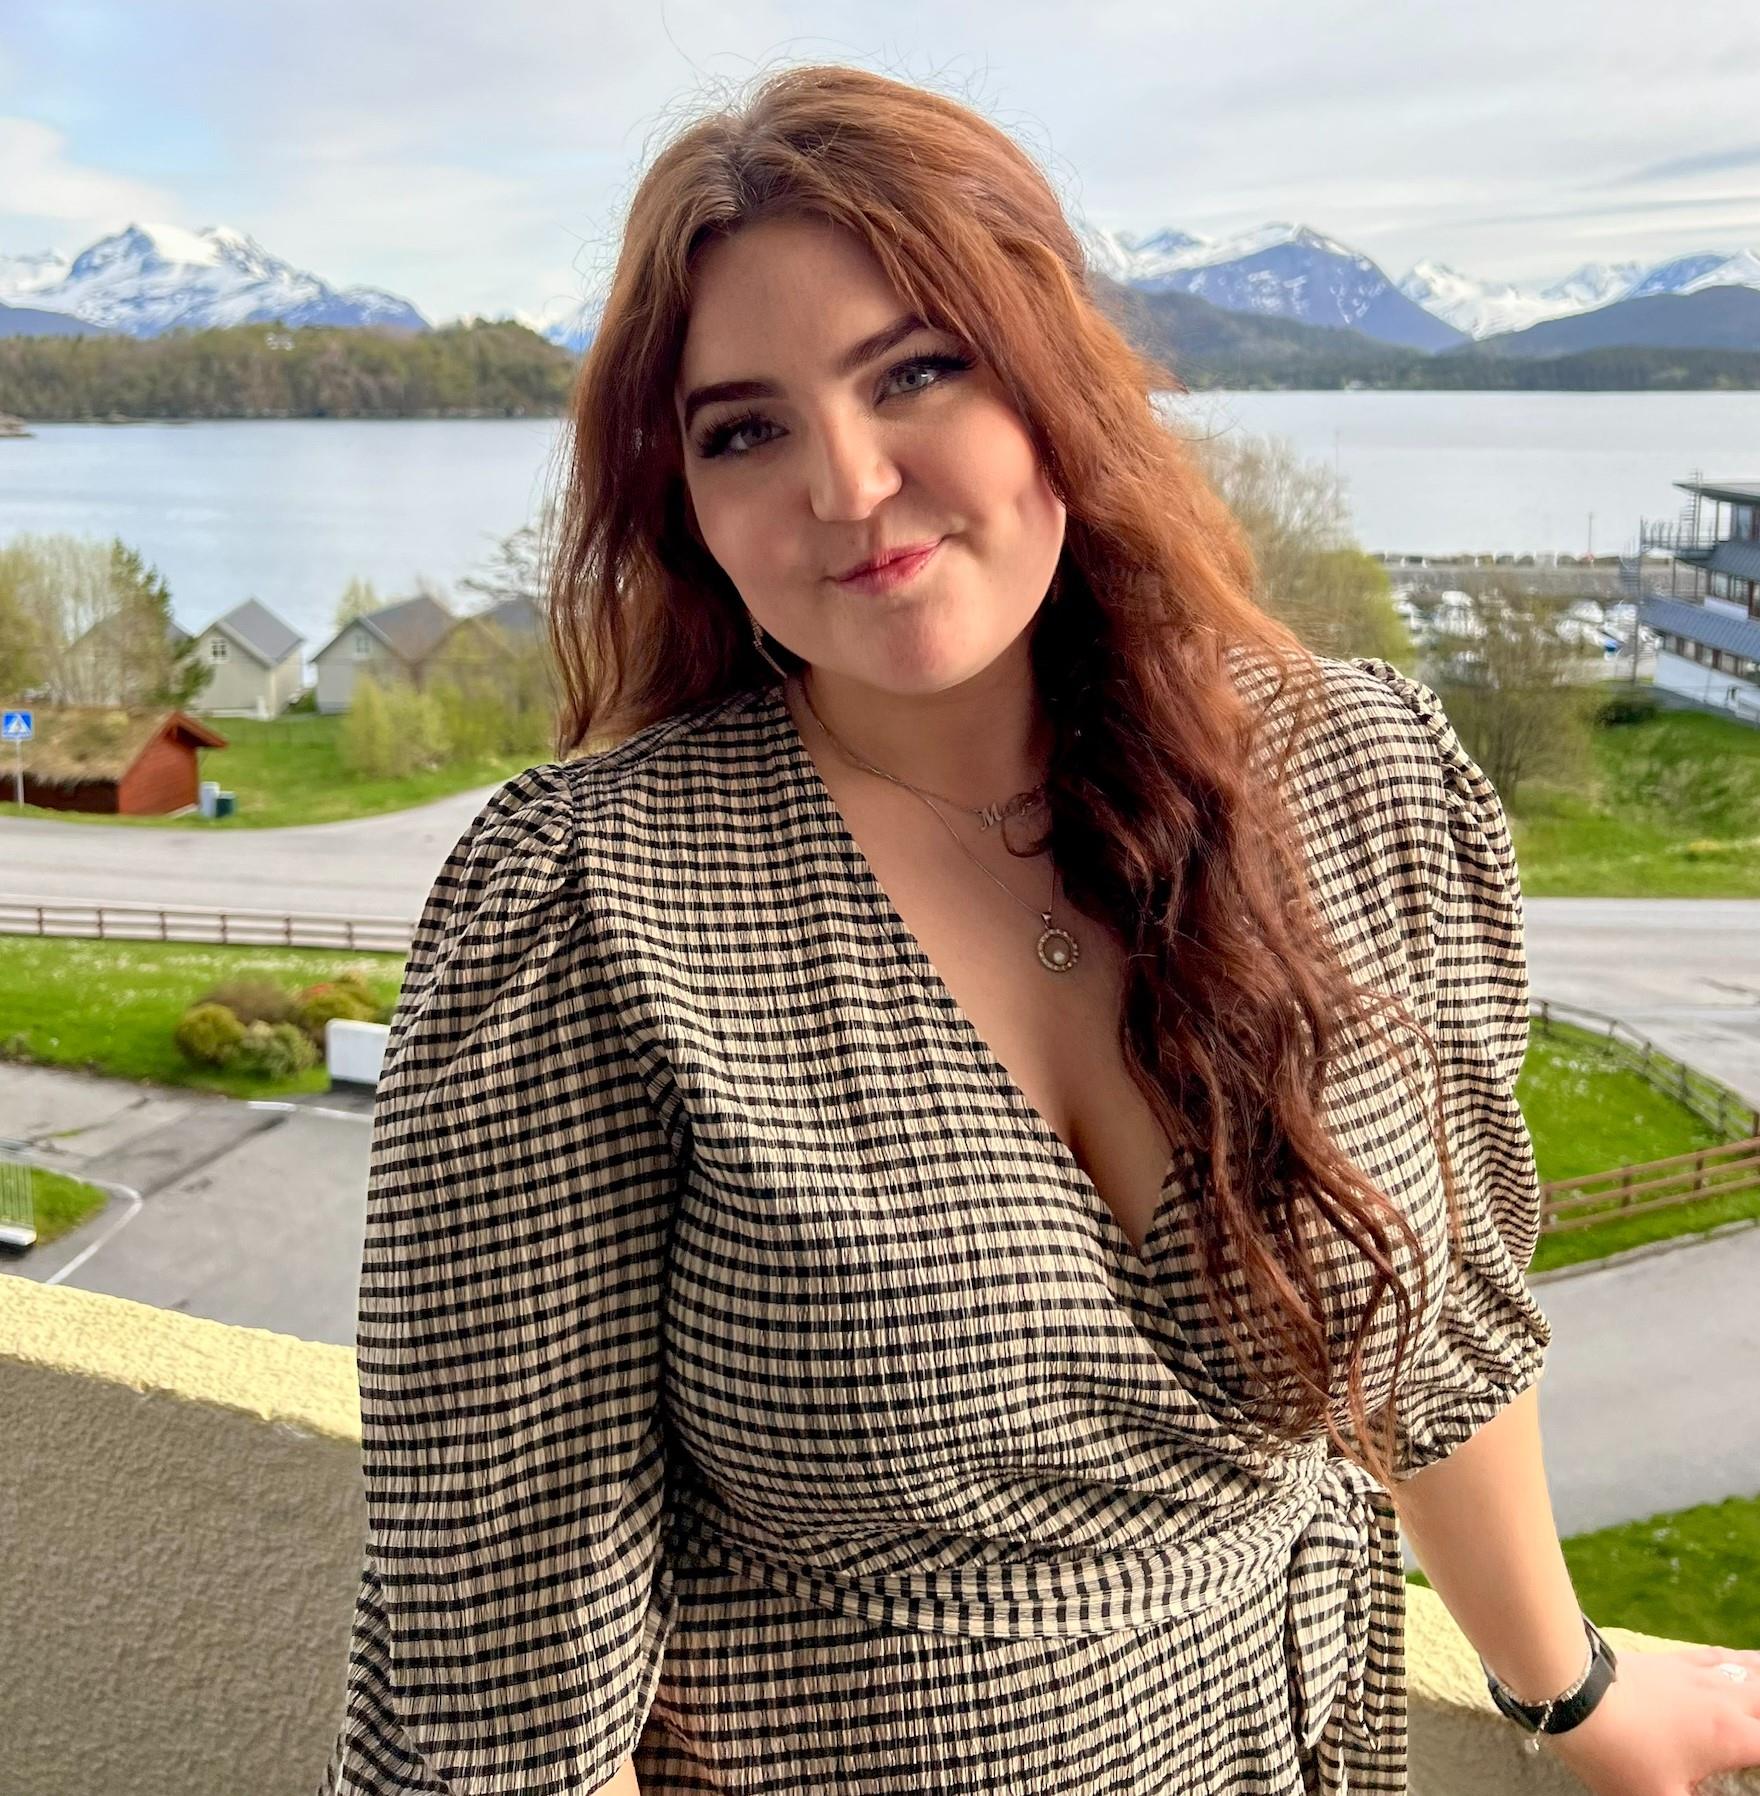 Bilde av Malin Svarstad. Kvinne som smiler mot kamera. Hun har rødt hår og har på seg en rutete kjole. Hun står ute på en terrasse, og man ser fjell og hav i bakgrunn. 